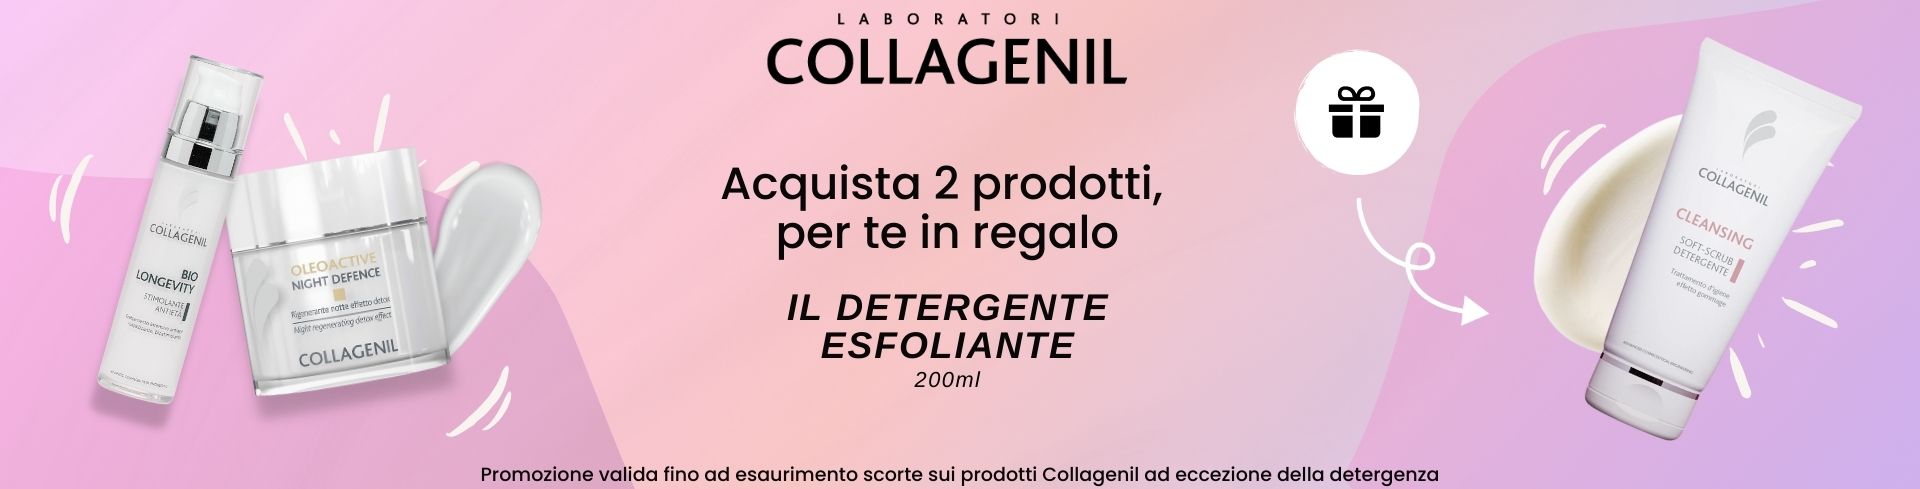 banner promozionale collagenil detergente restitutivo in omaggio desktop